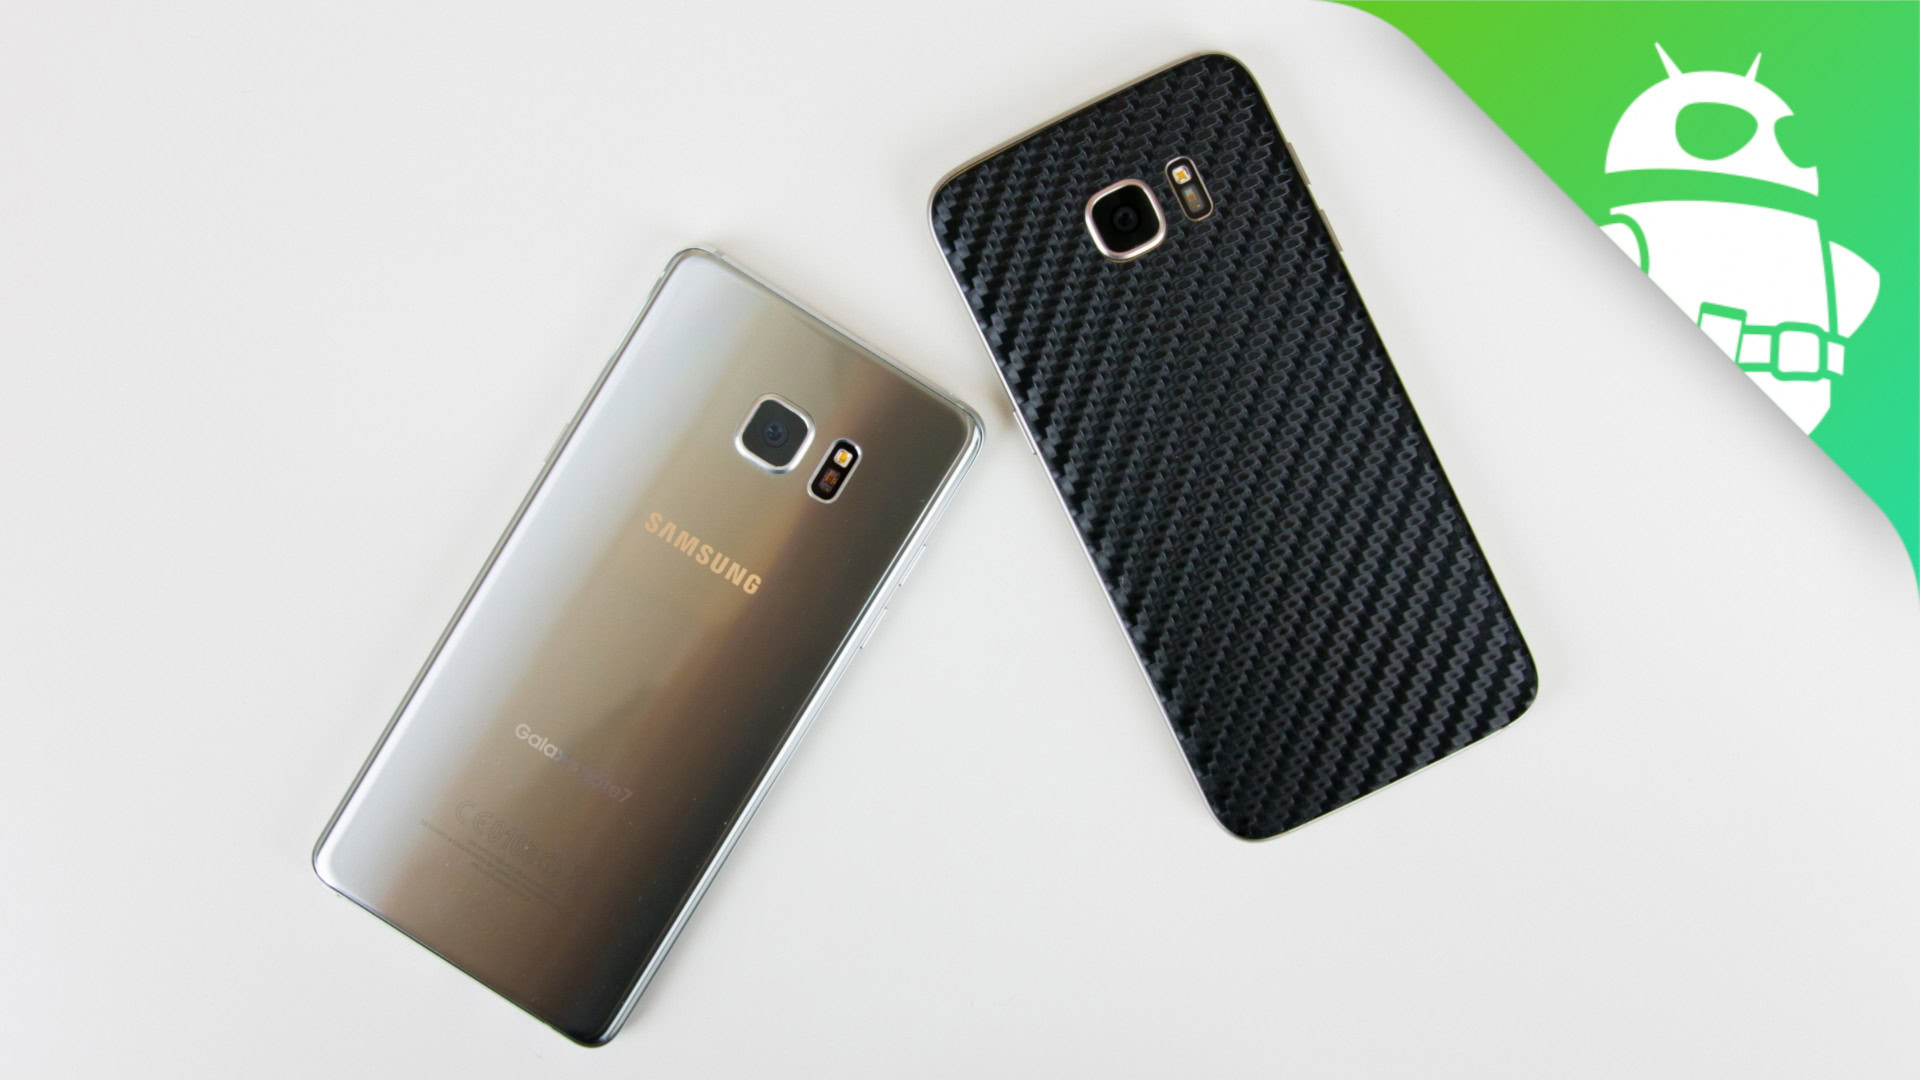 Trekken Vergelijkbaar Soepel Samsung Galaxy Note 7 vs Galaxy S7 Edge - Android Authority